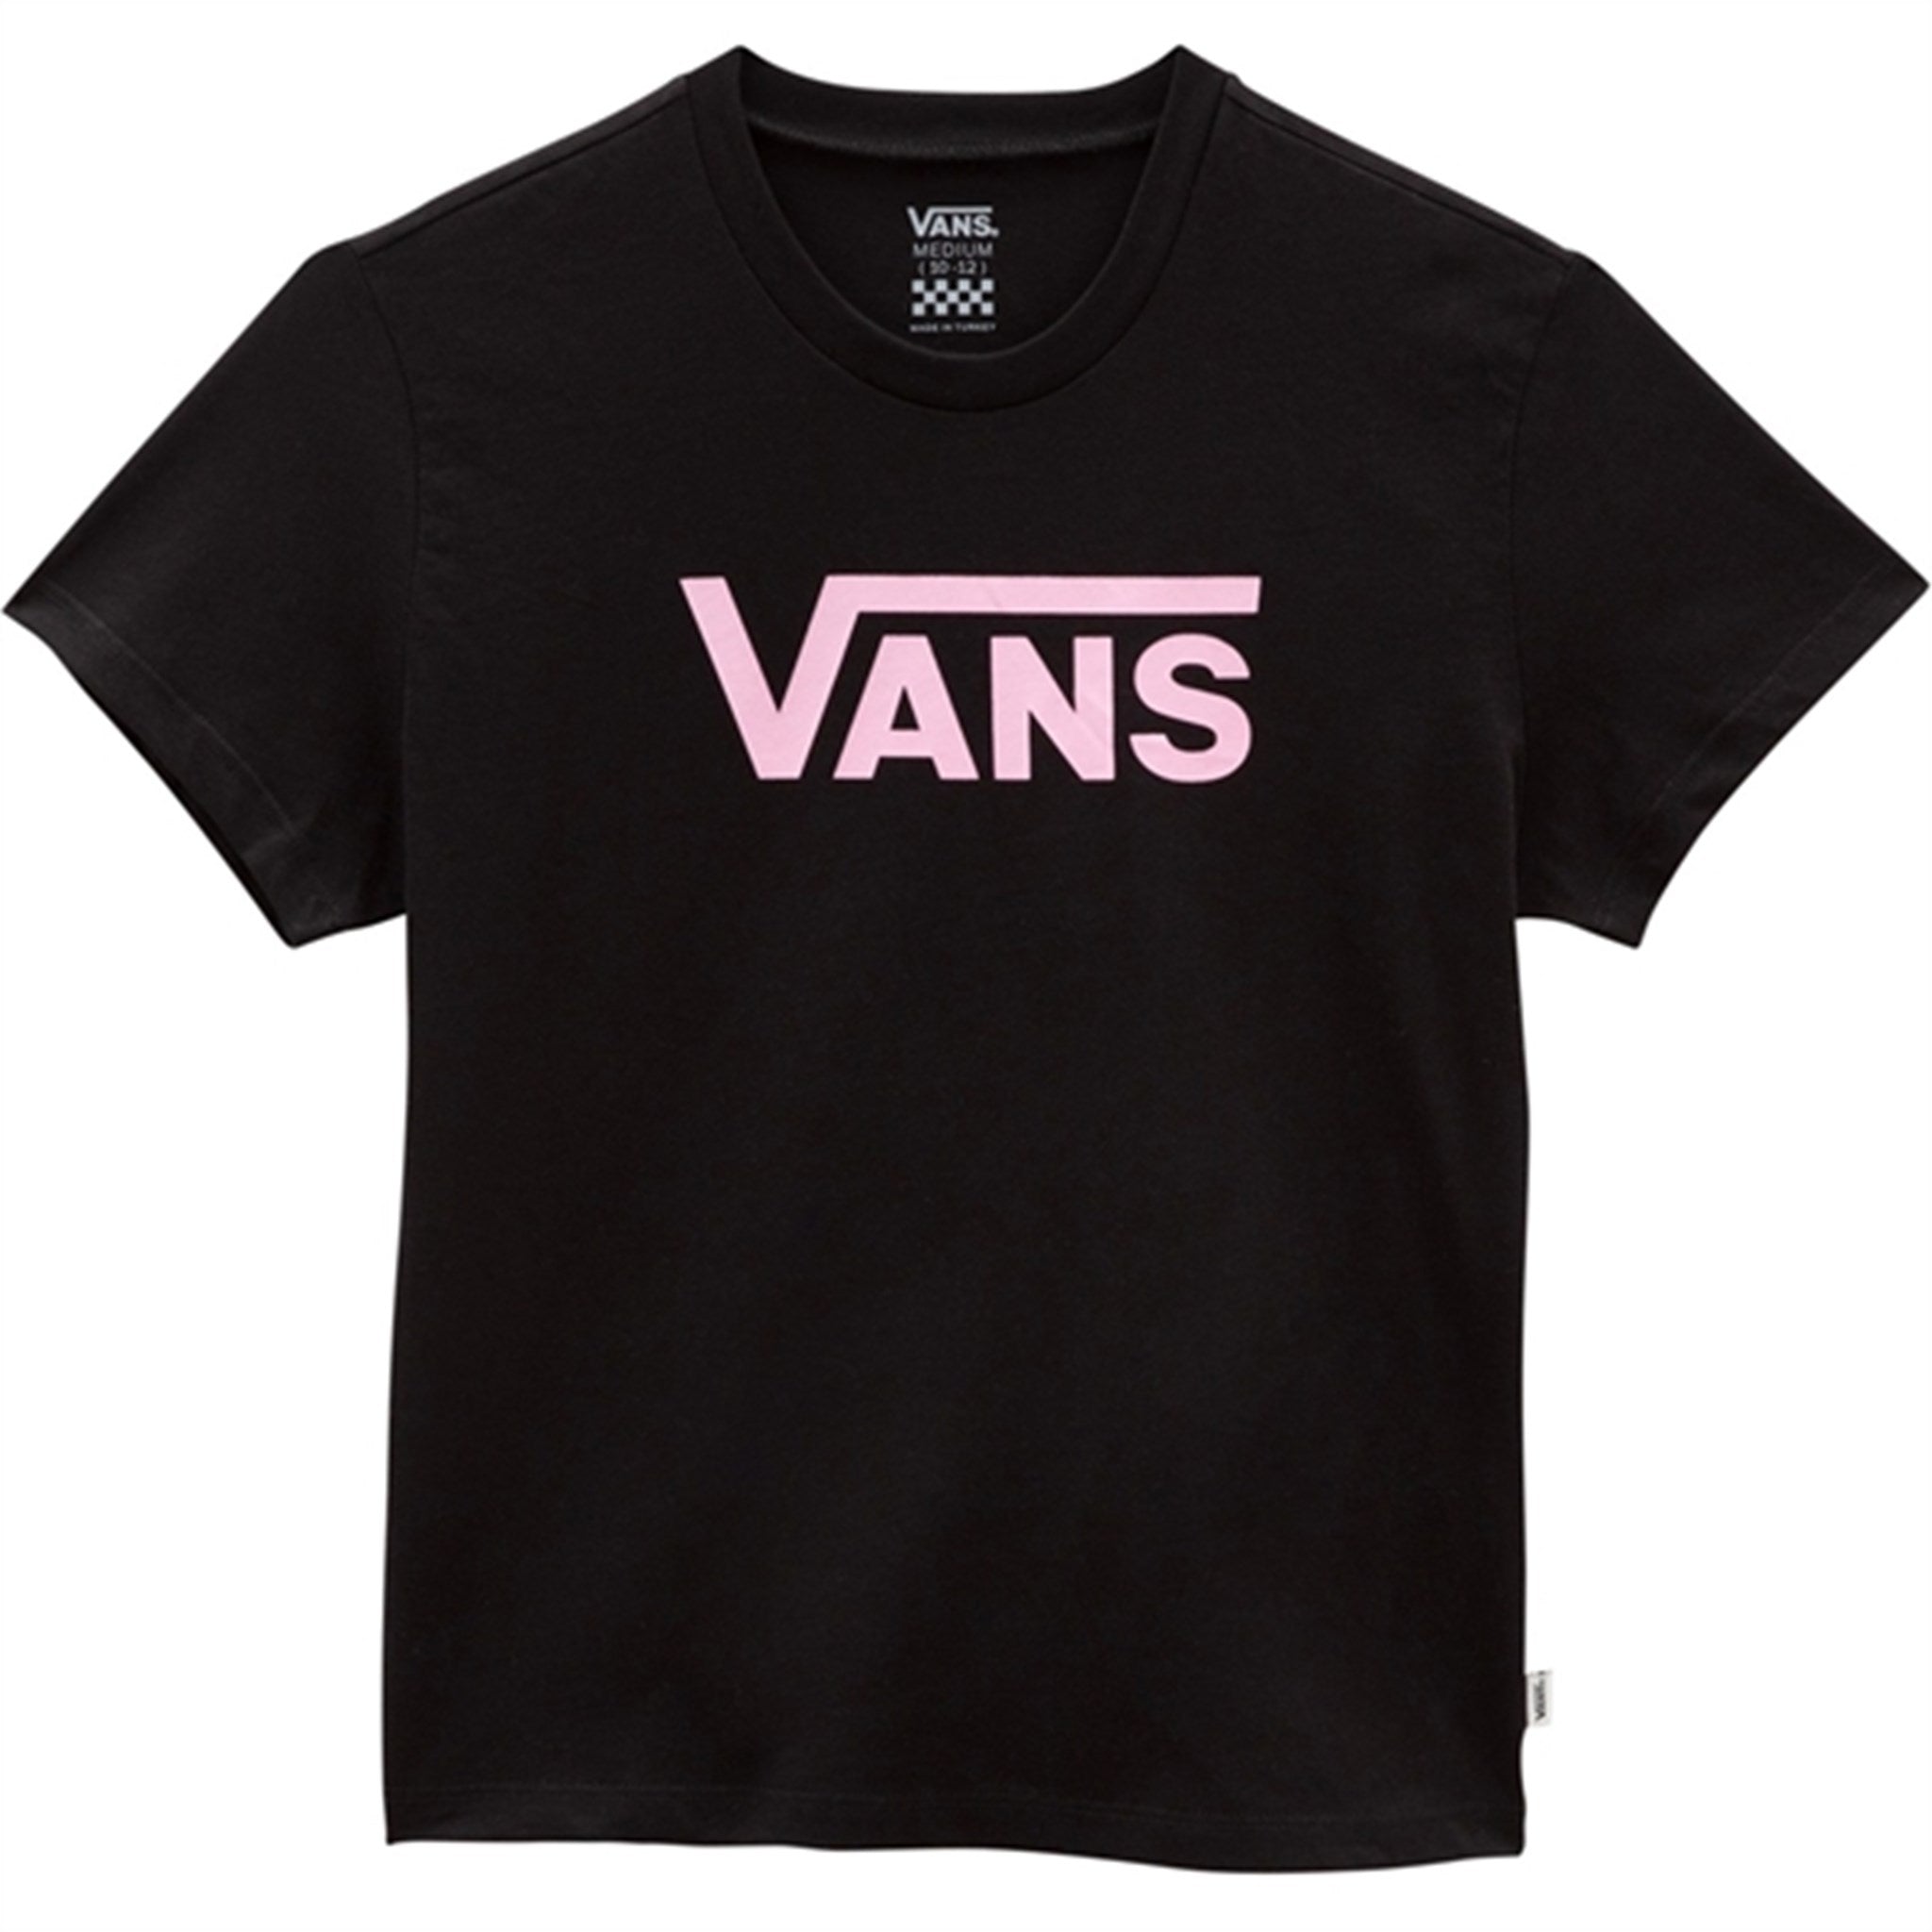 VANS Flying V Crew T-shirt Black/Begonia Pink - Str. M